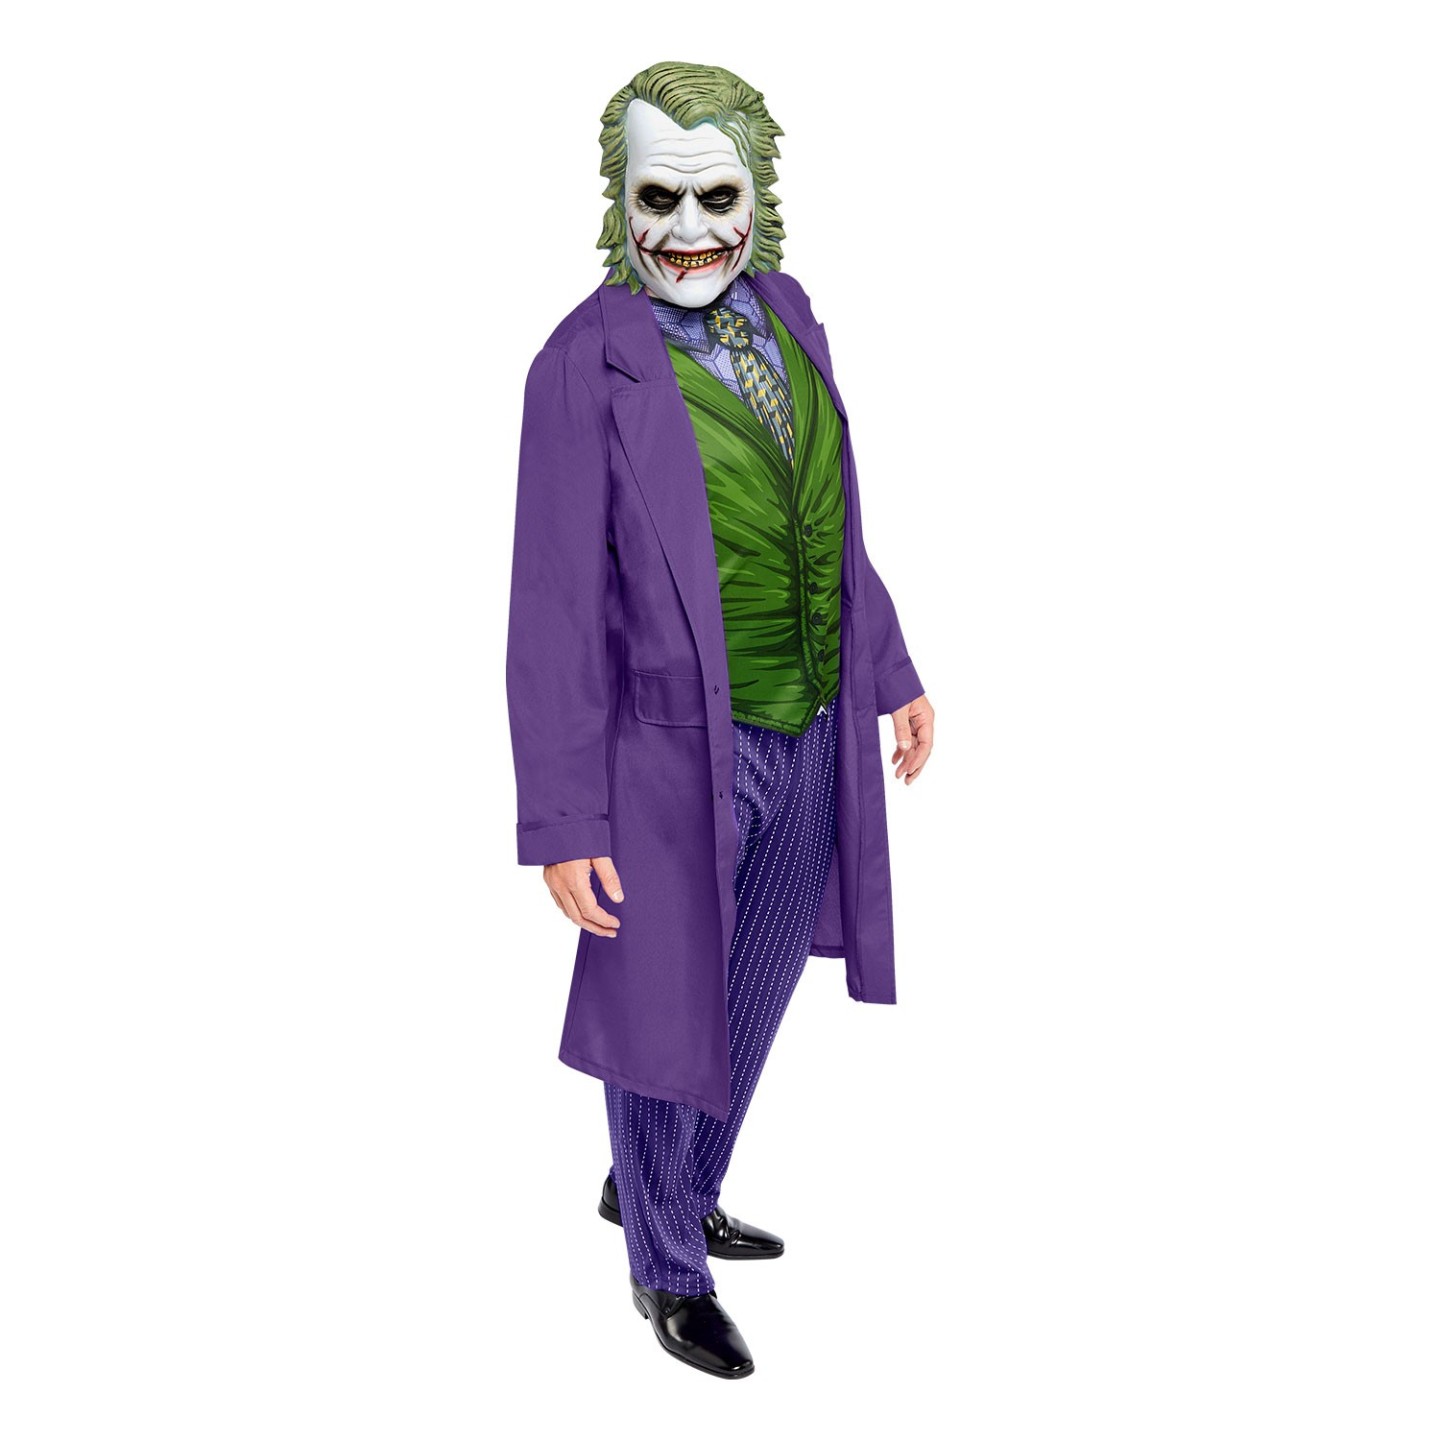 Mentaliteit Verblinding Interpunctie The Joker kostuum heren| Jokershop.be - Halloween Verkleedkleding